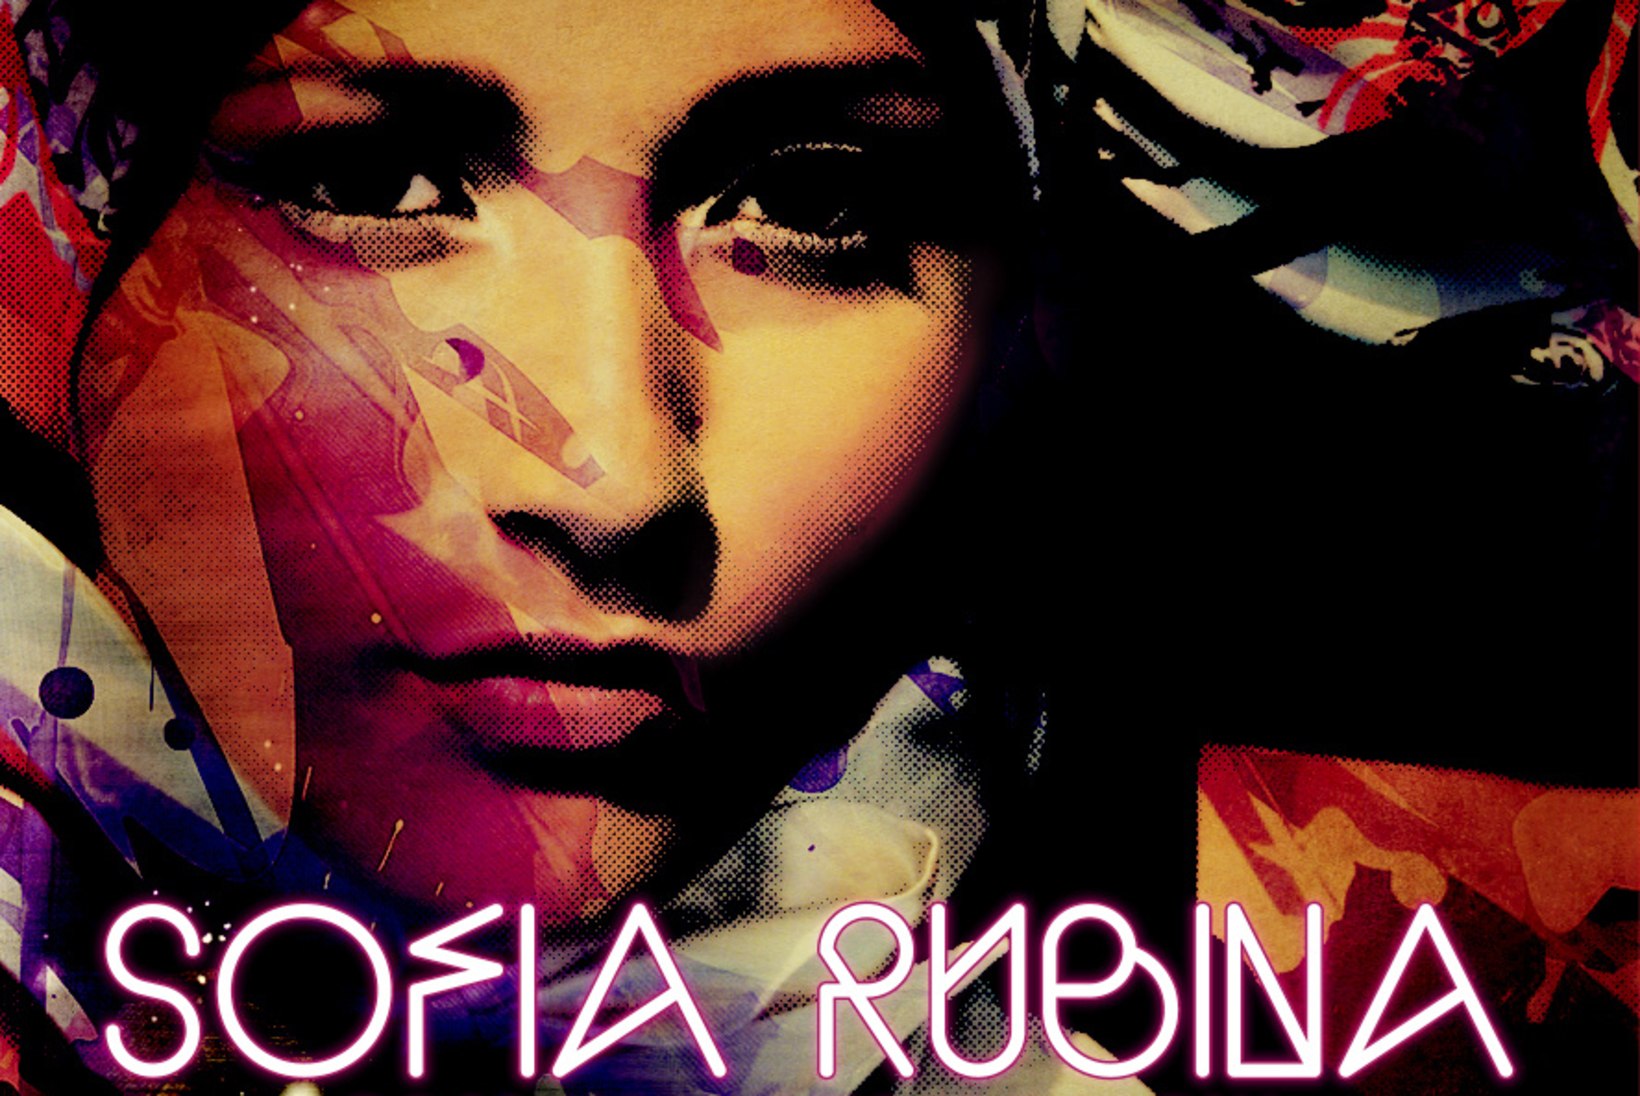 Sofia Rubina külvab uue plaadiga kosmilist armastust